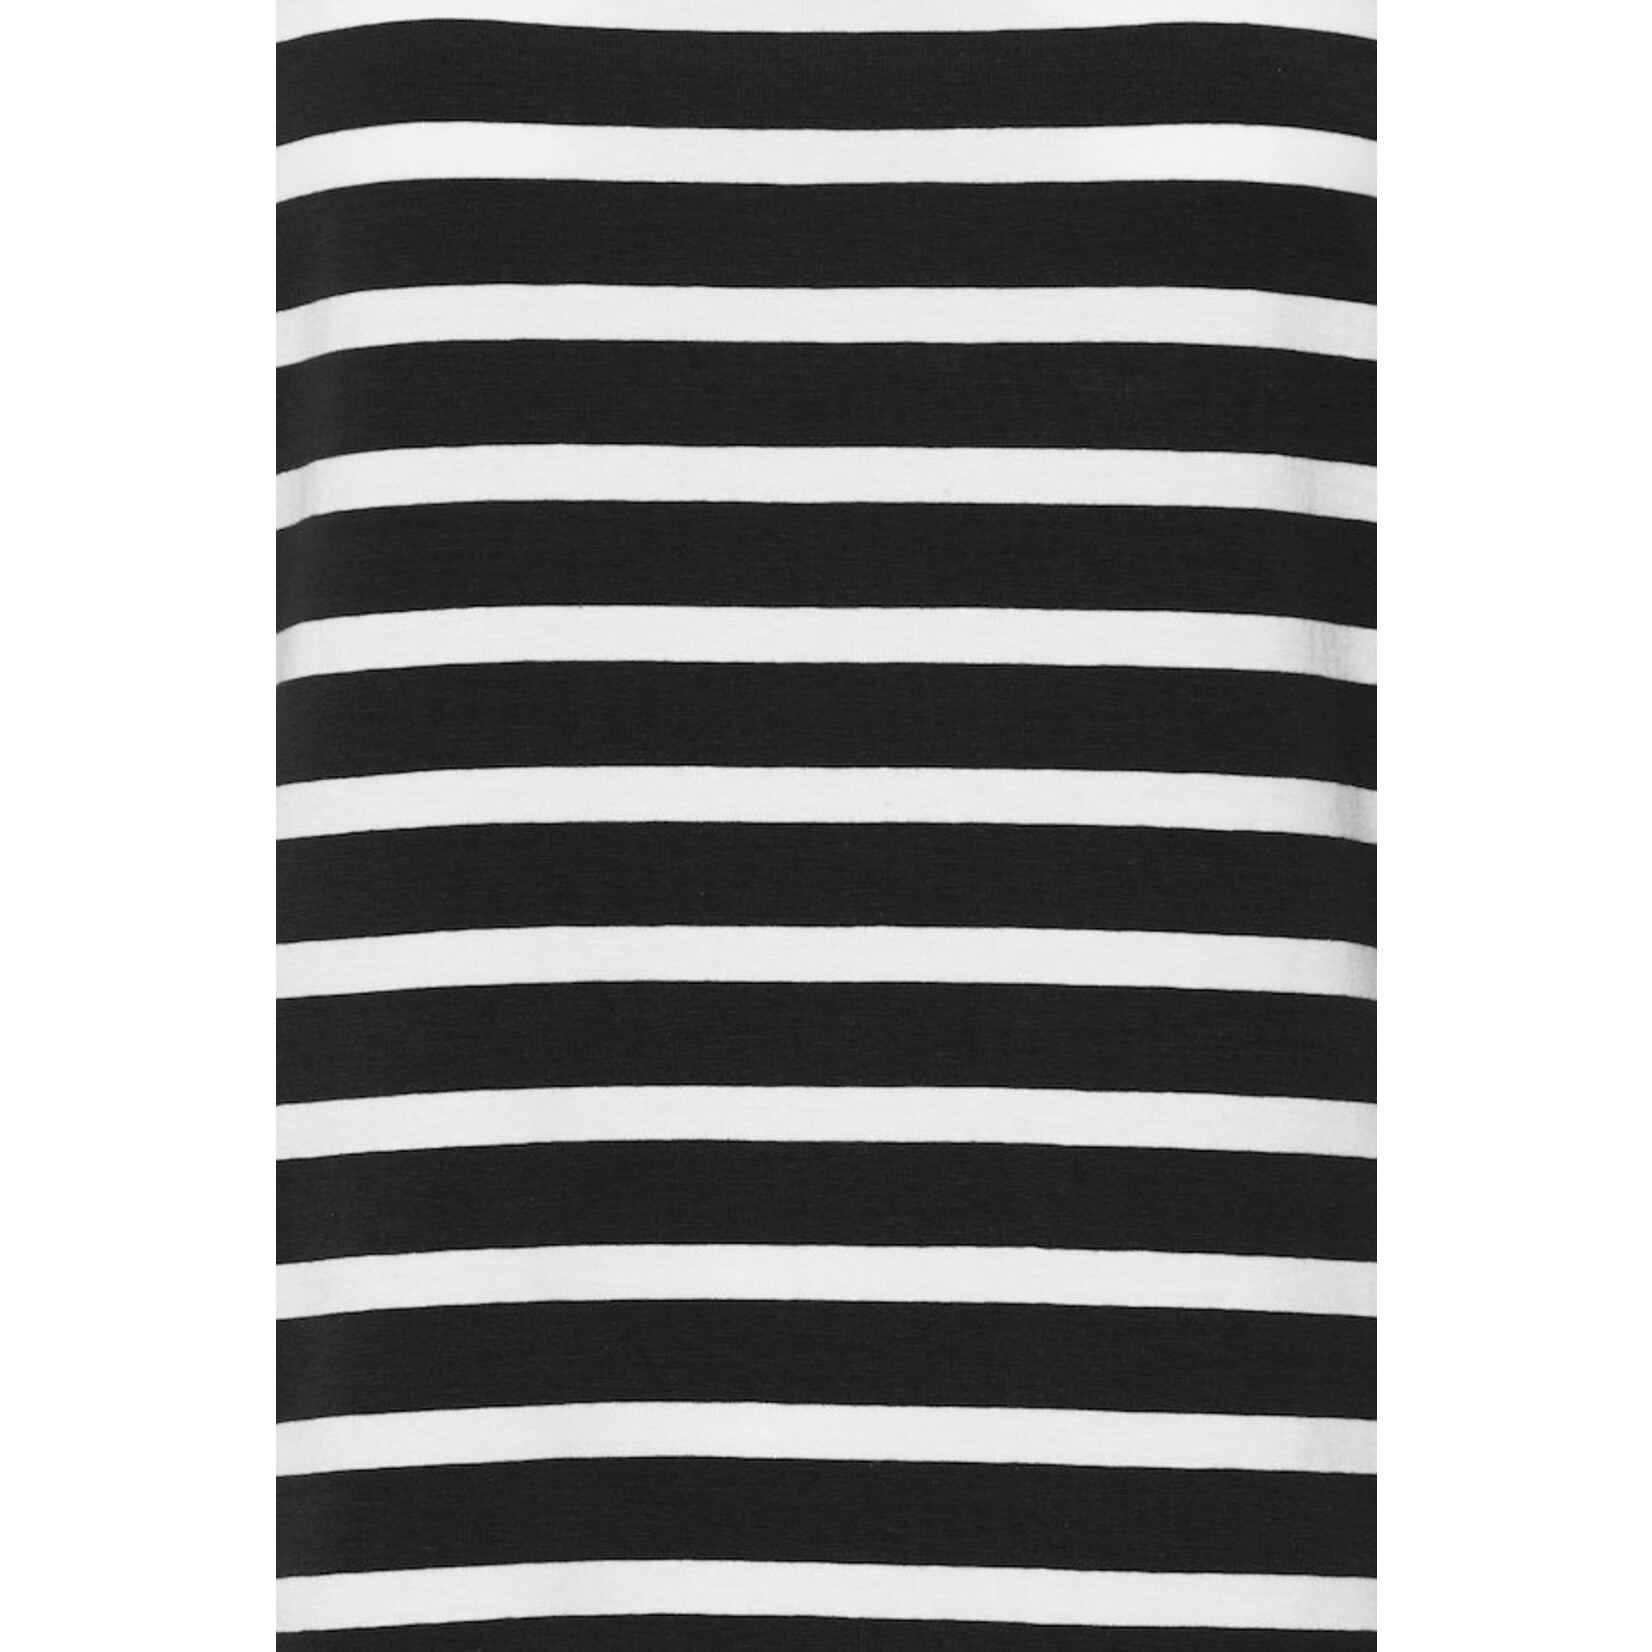 B. Young Pamila Striped T- Shirt